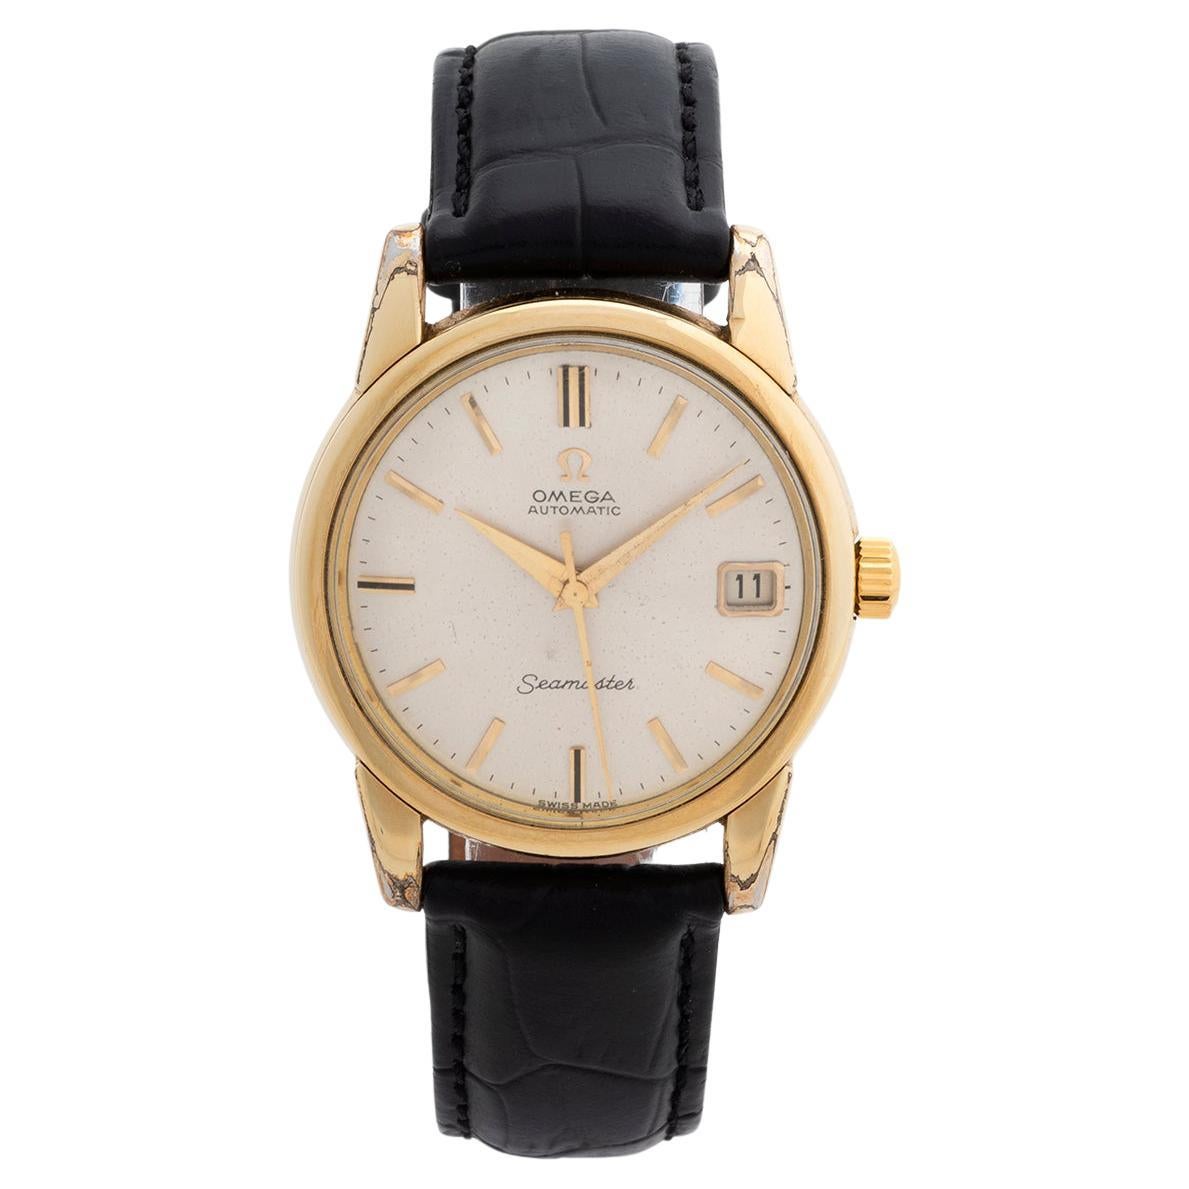 Omega Seamaster Ref 166.009, Superb Vintage Timepiece